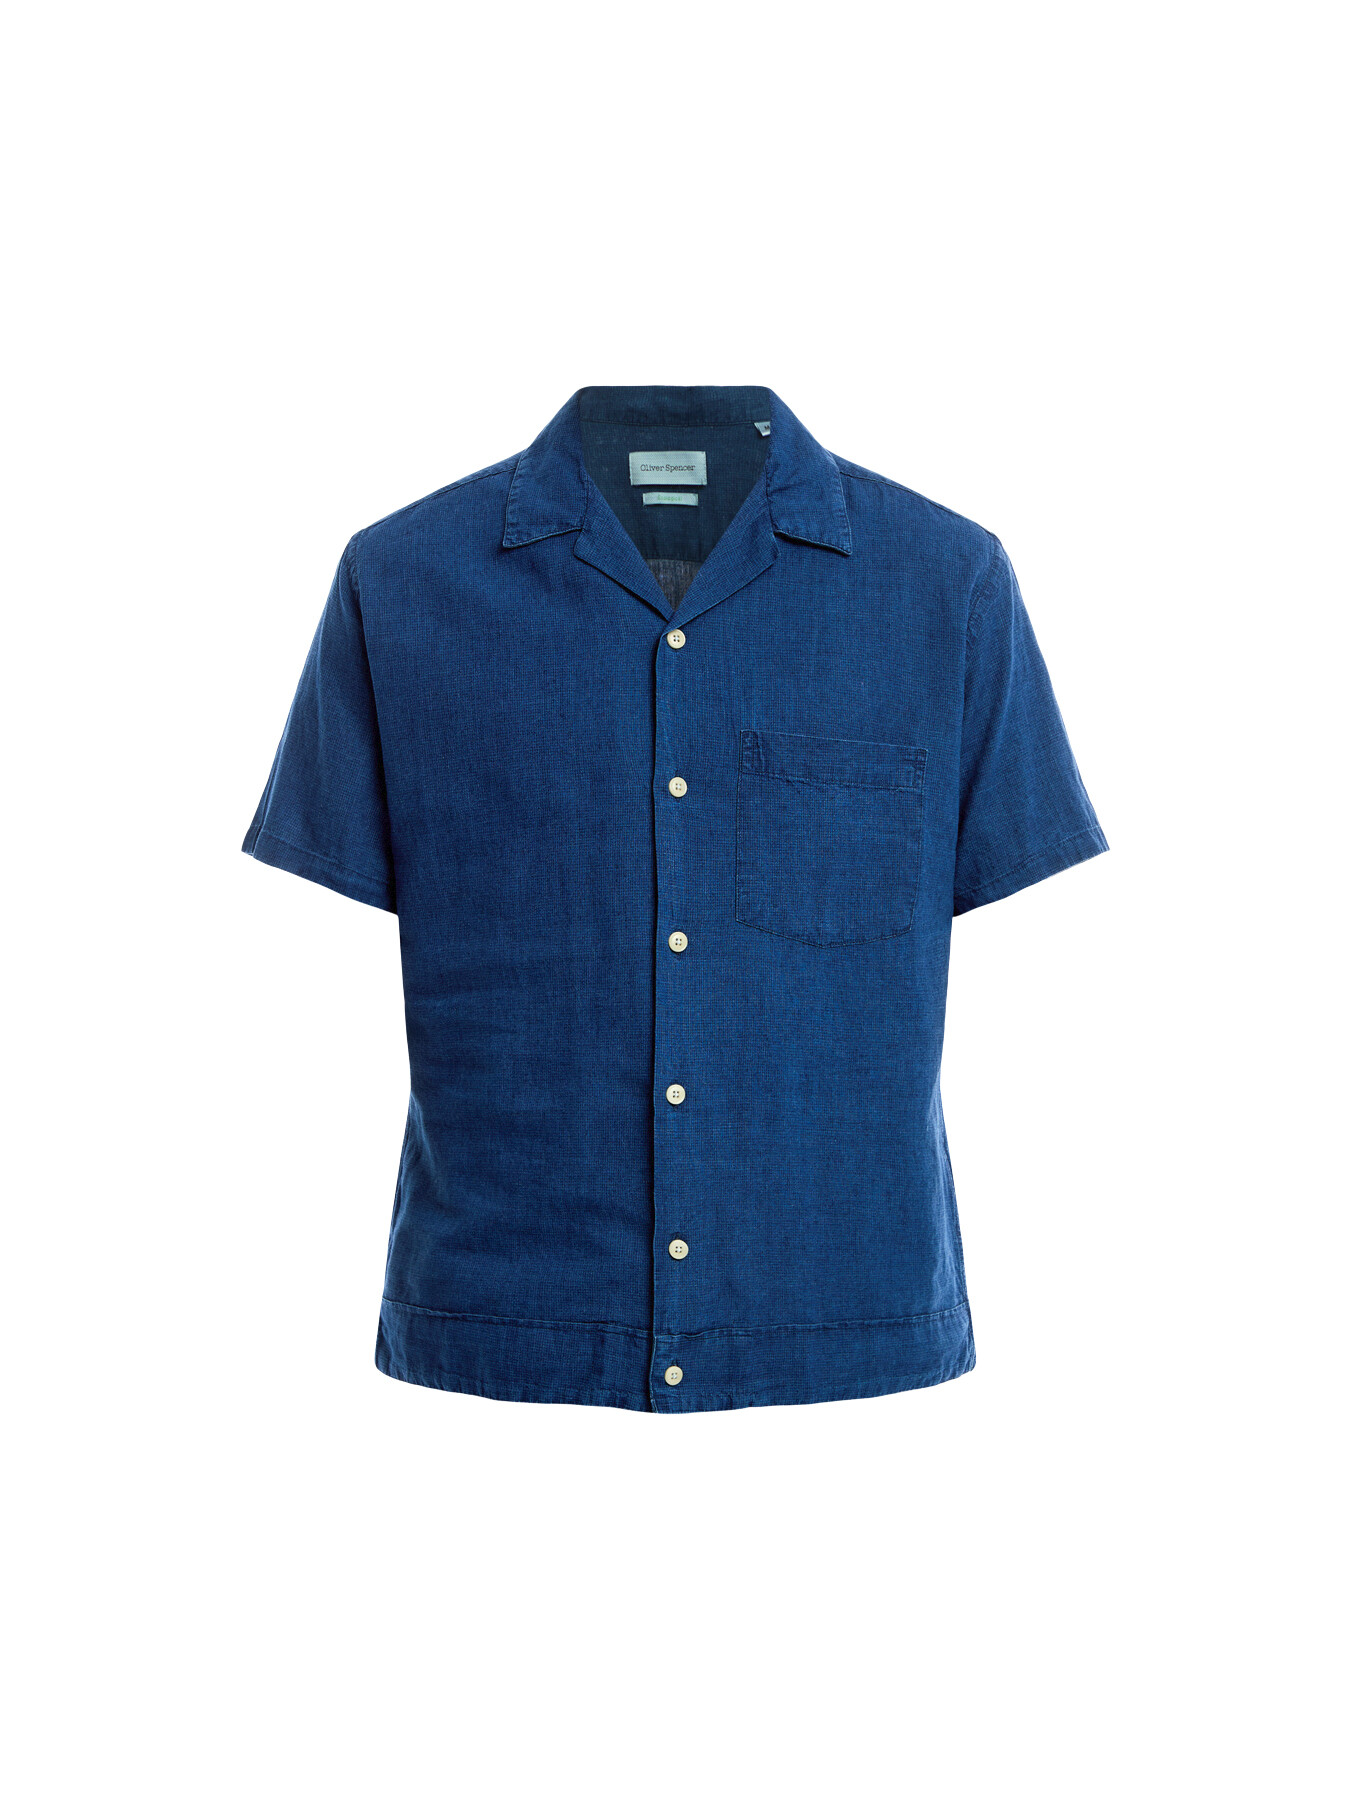 Oliver Spencer Men's Havana Short Sleeve Shirt Navy In Blue